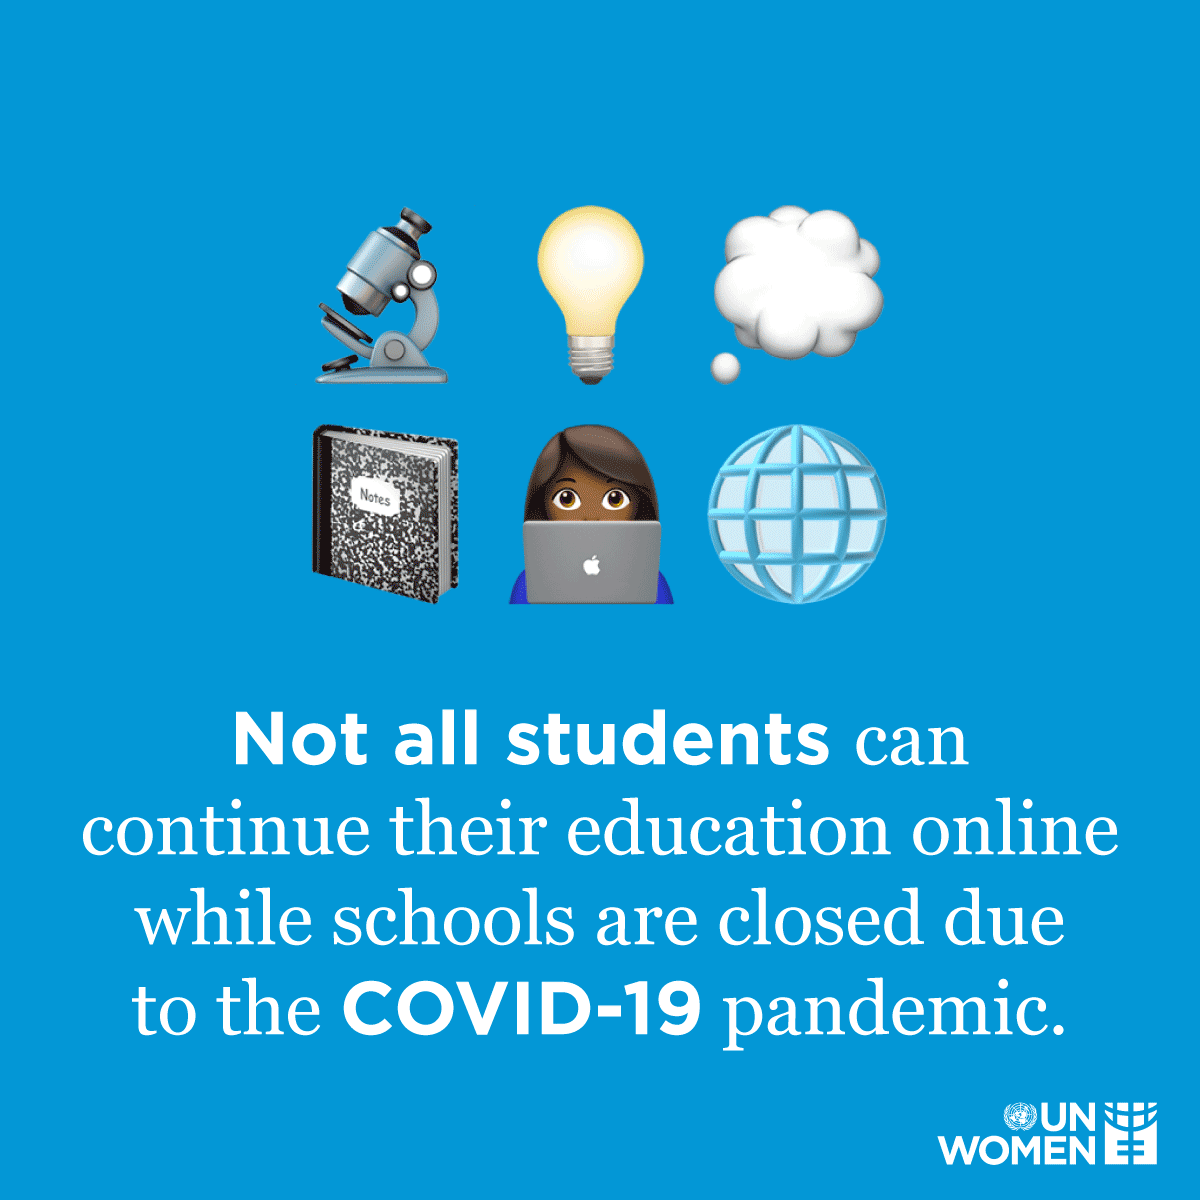 Не все учащиеся могут продолжить онлайн-обучение, пока школы закрыты из-за пандемии COVID-19